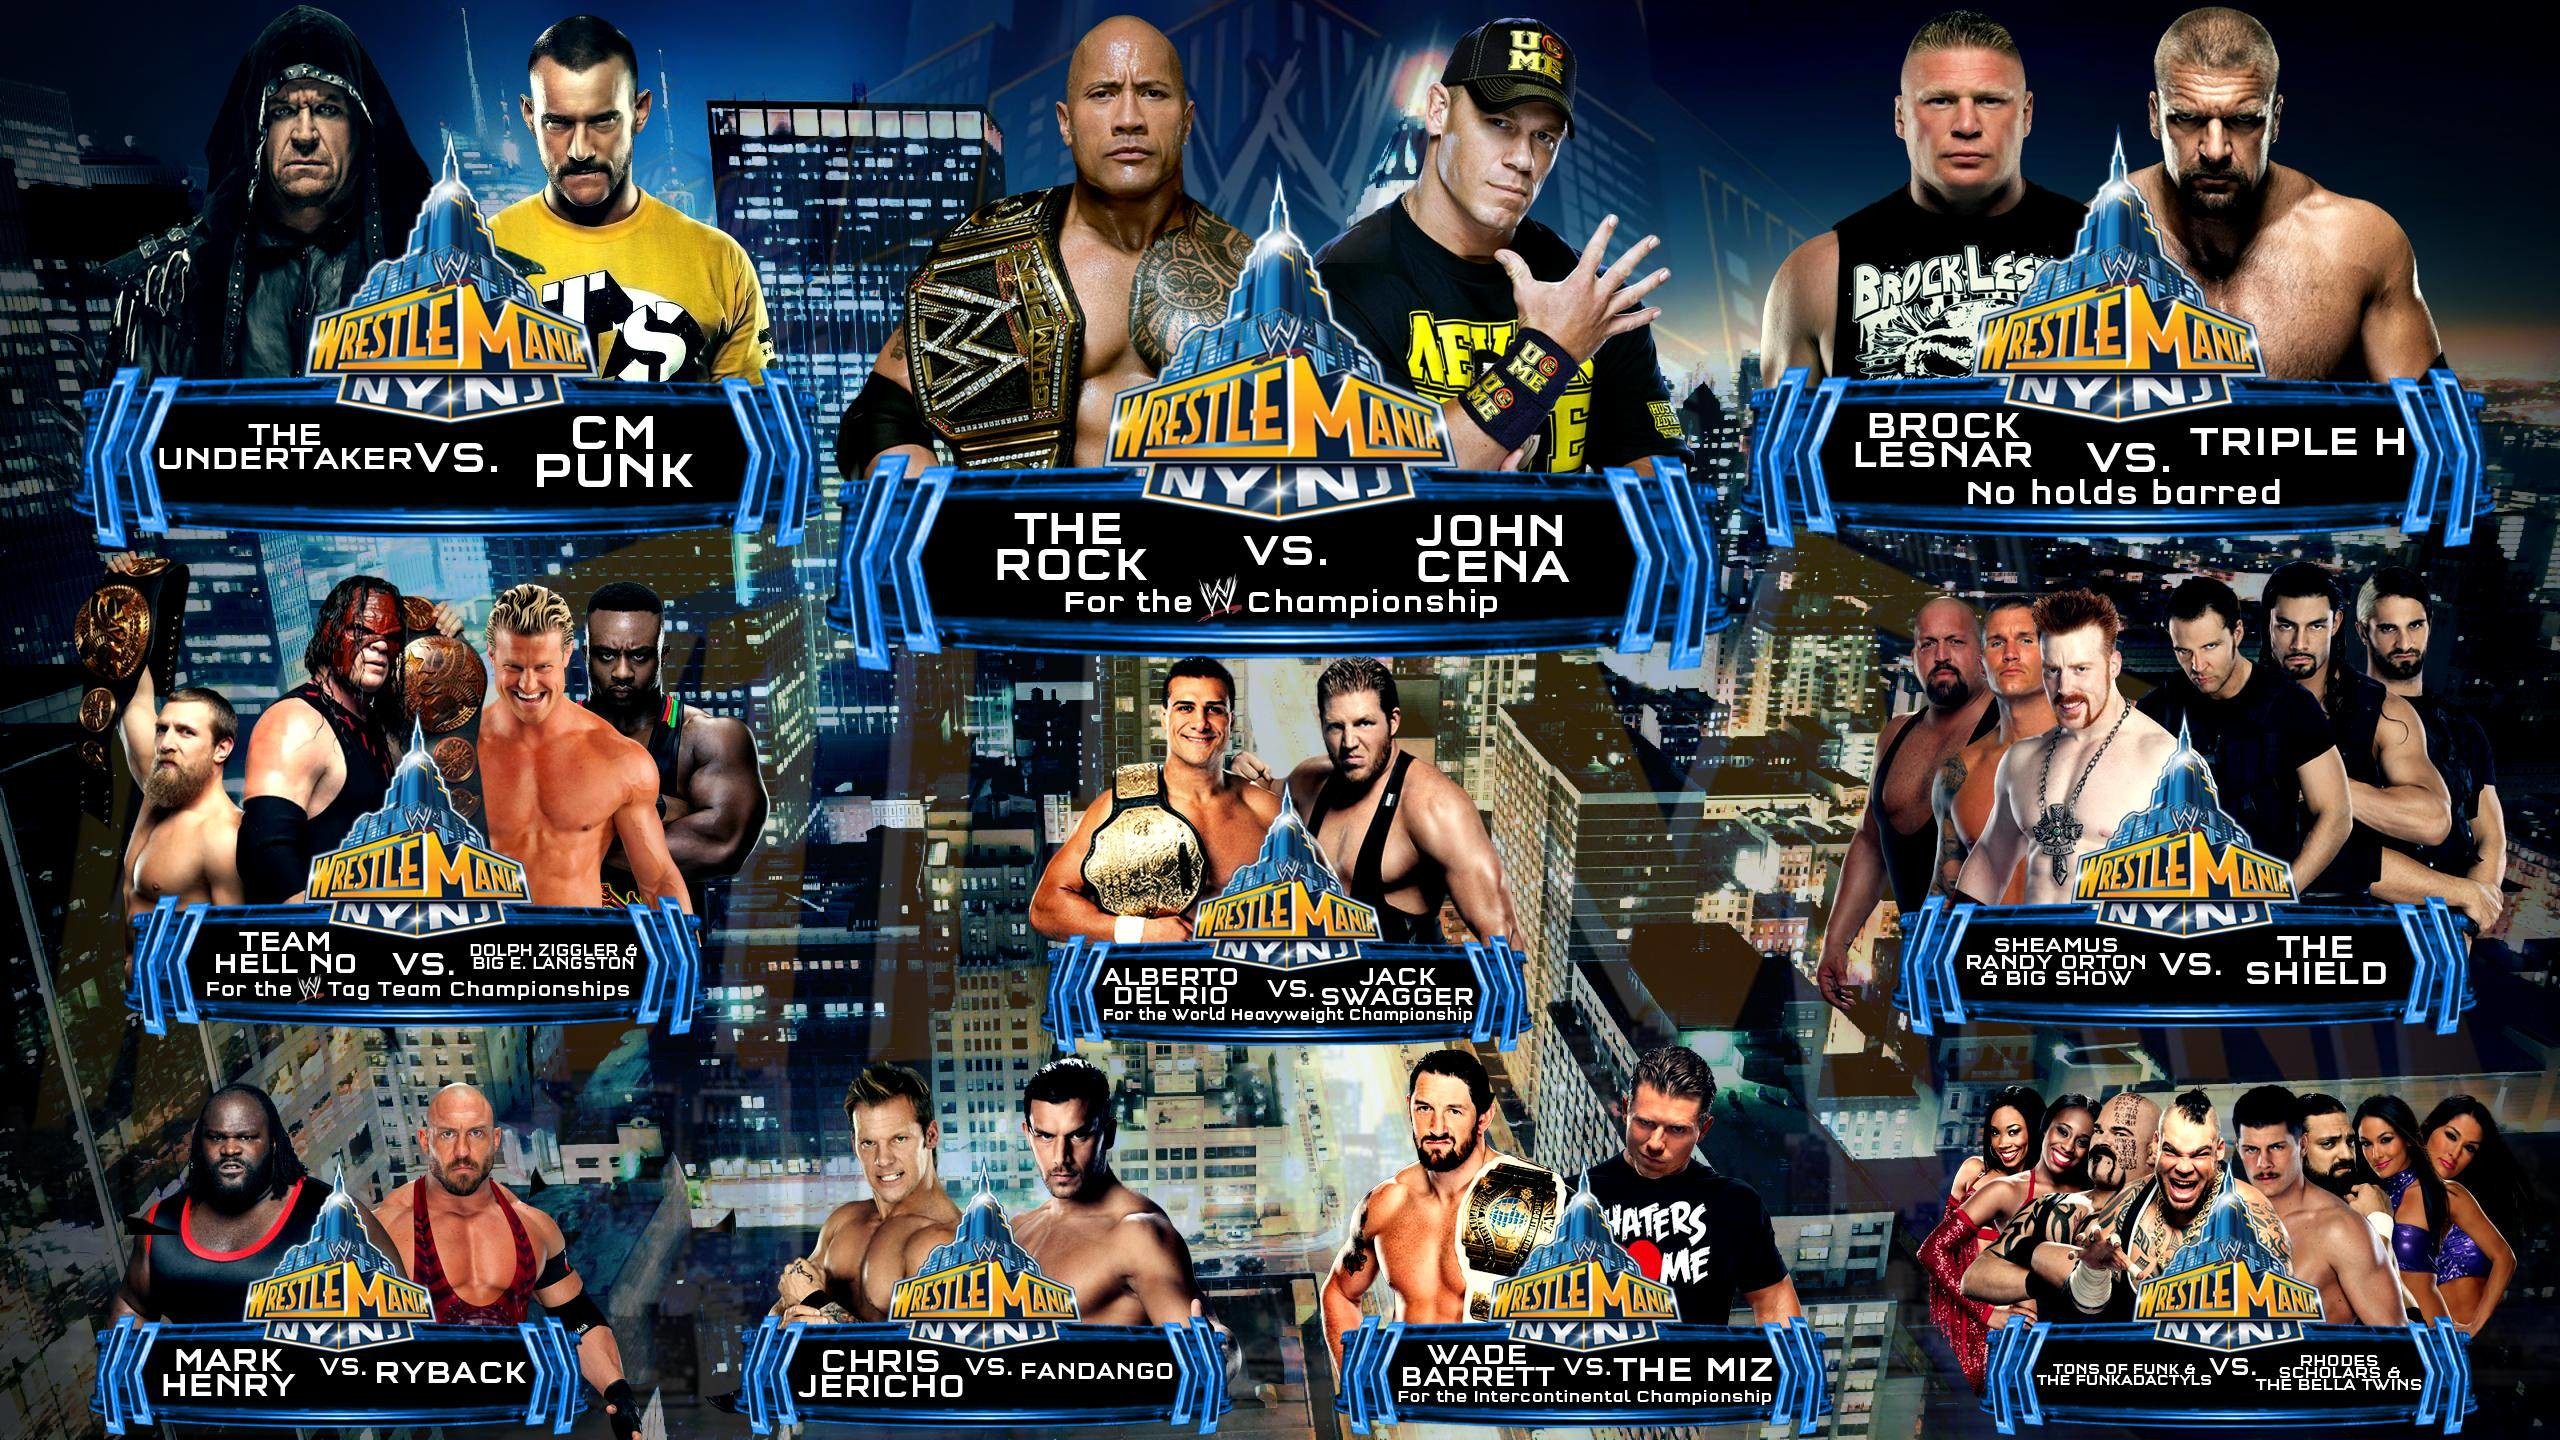 2560x1440 WWE WrestleMania 32 Wallpaper - WallpaperSafari